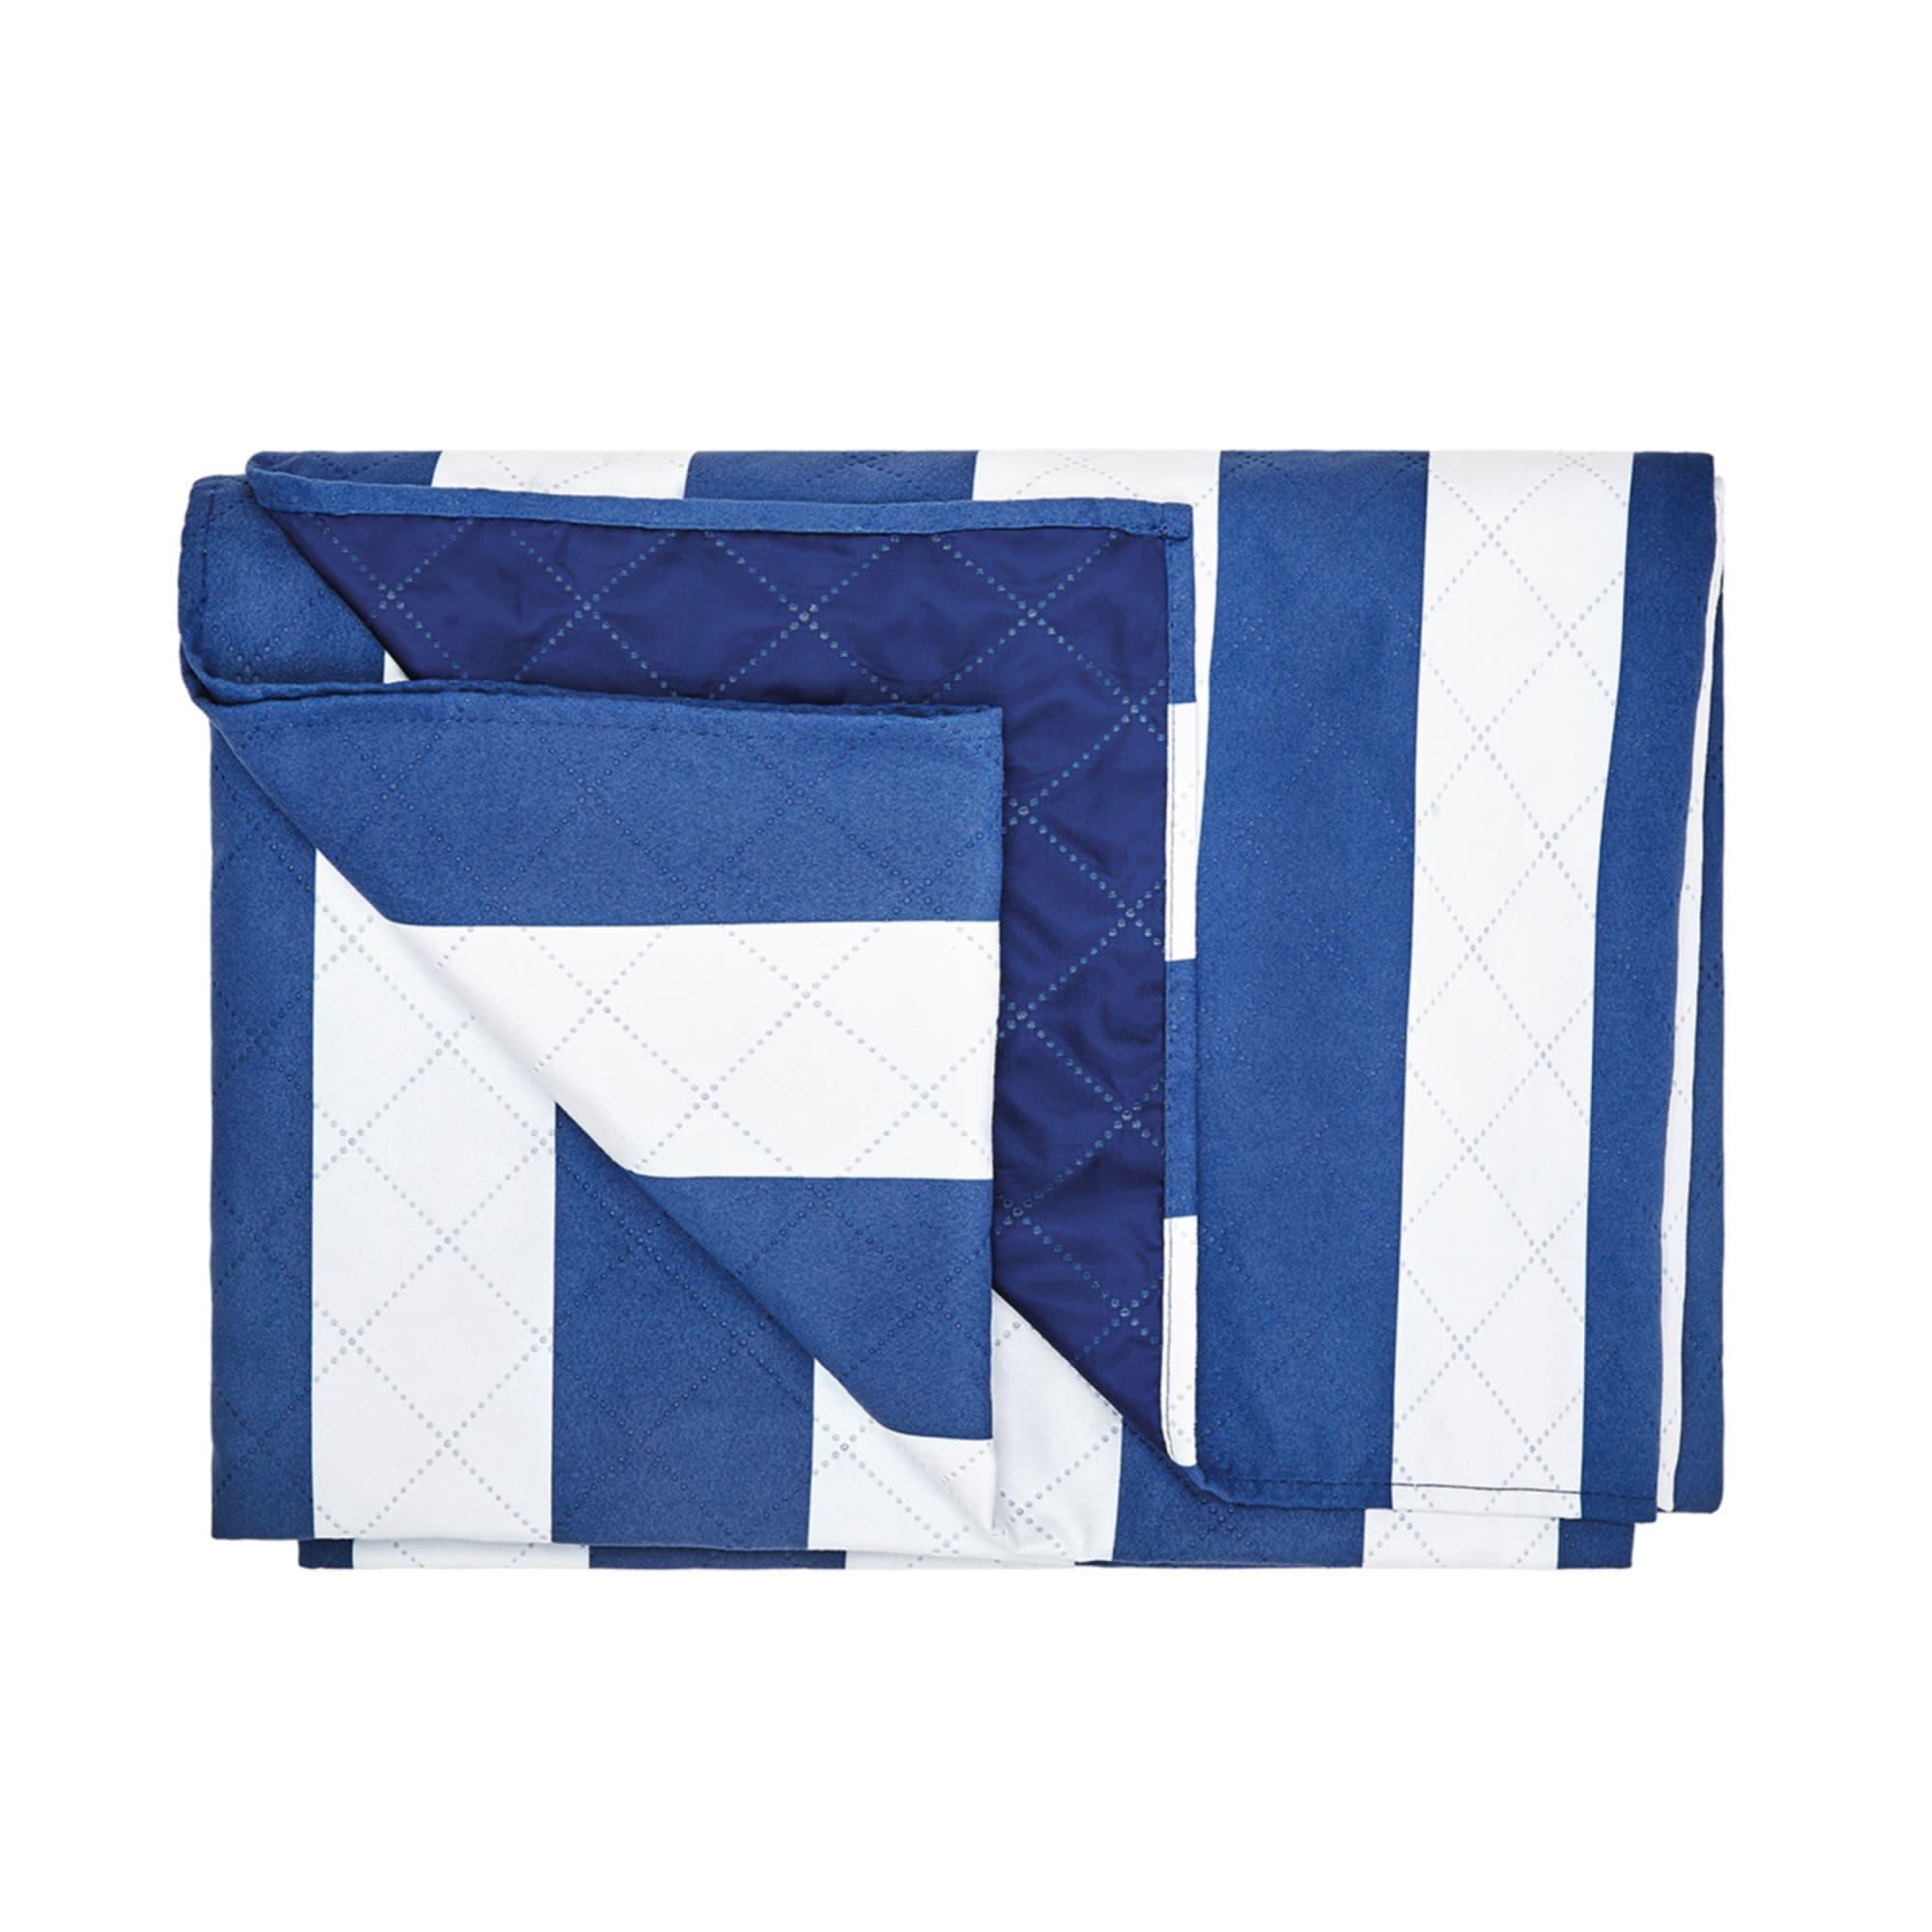 Dock & Bay Picnic Blanket Extra Large Whitsunday Blue Image 3